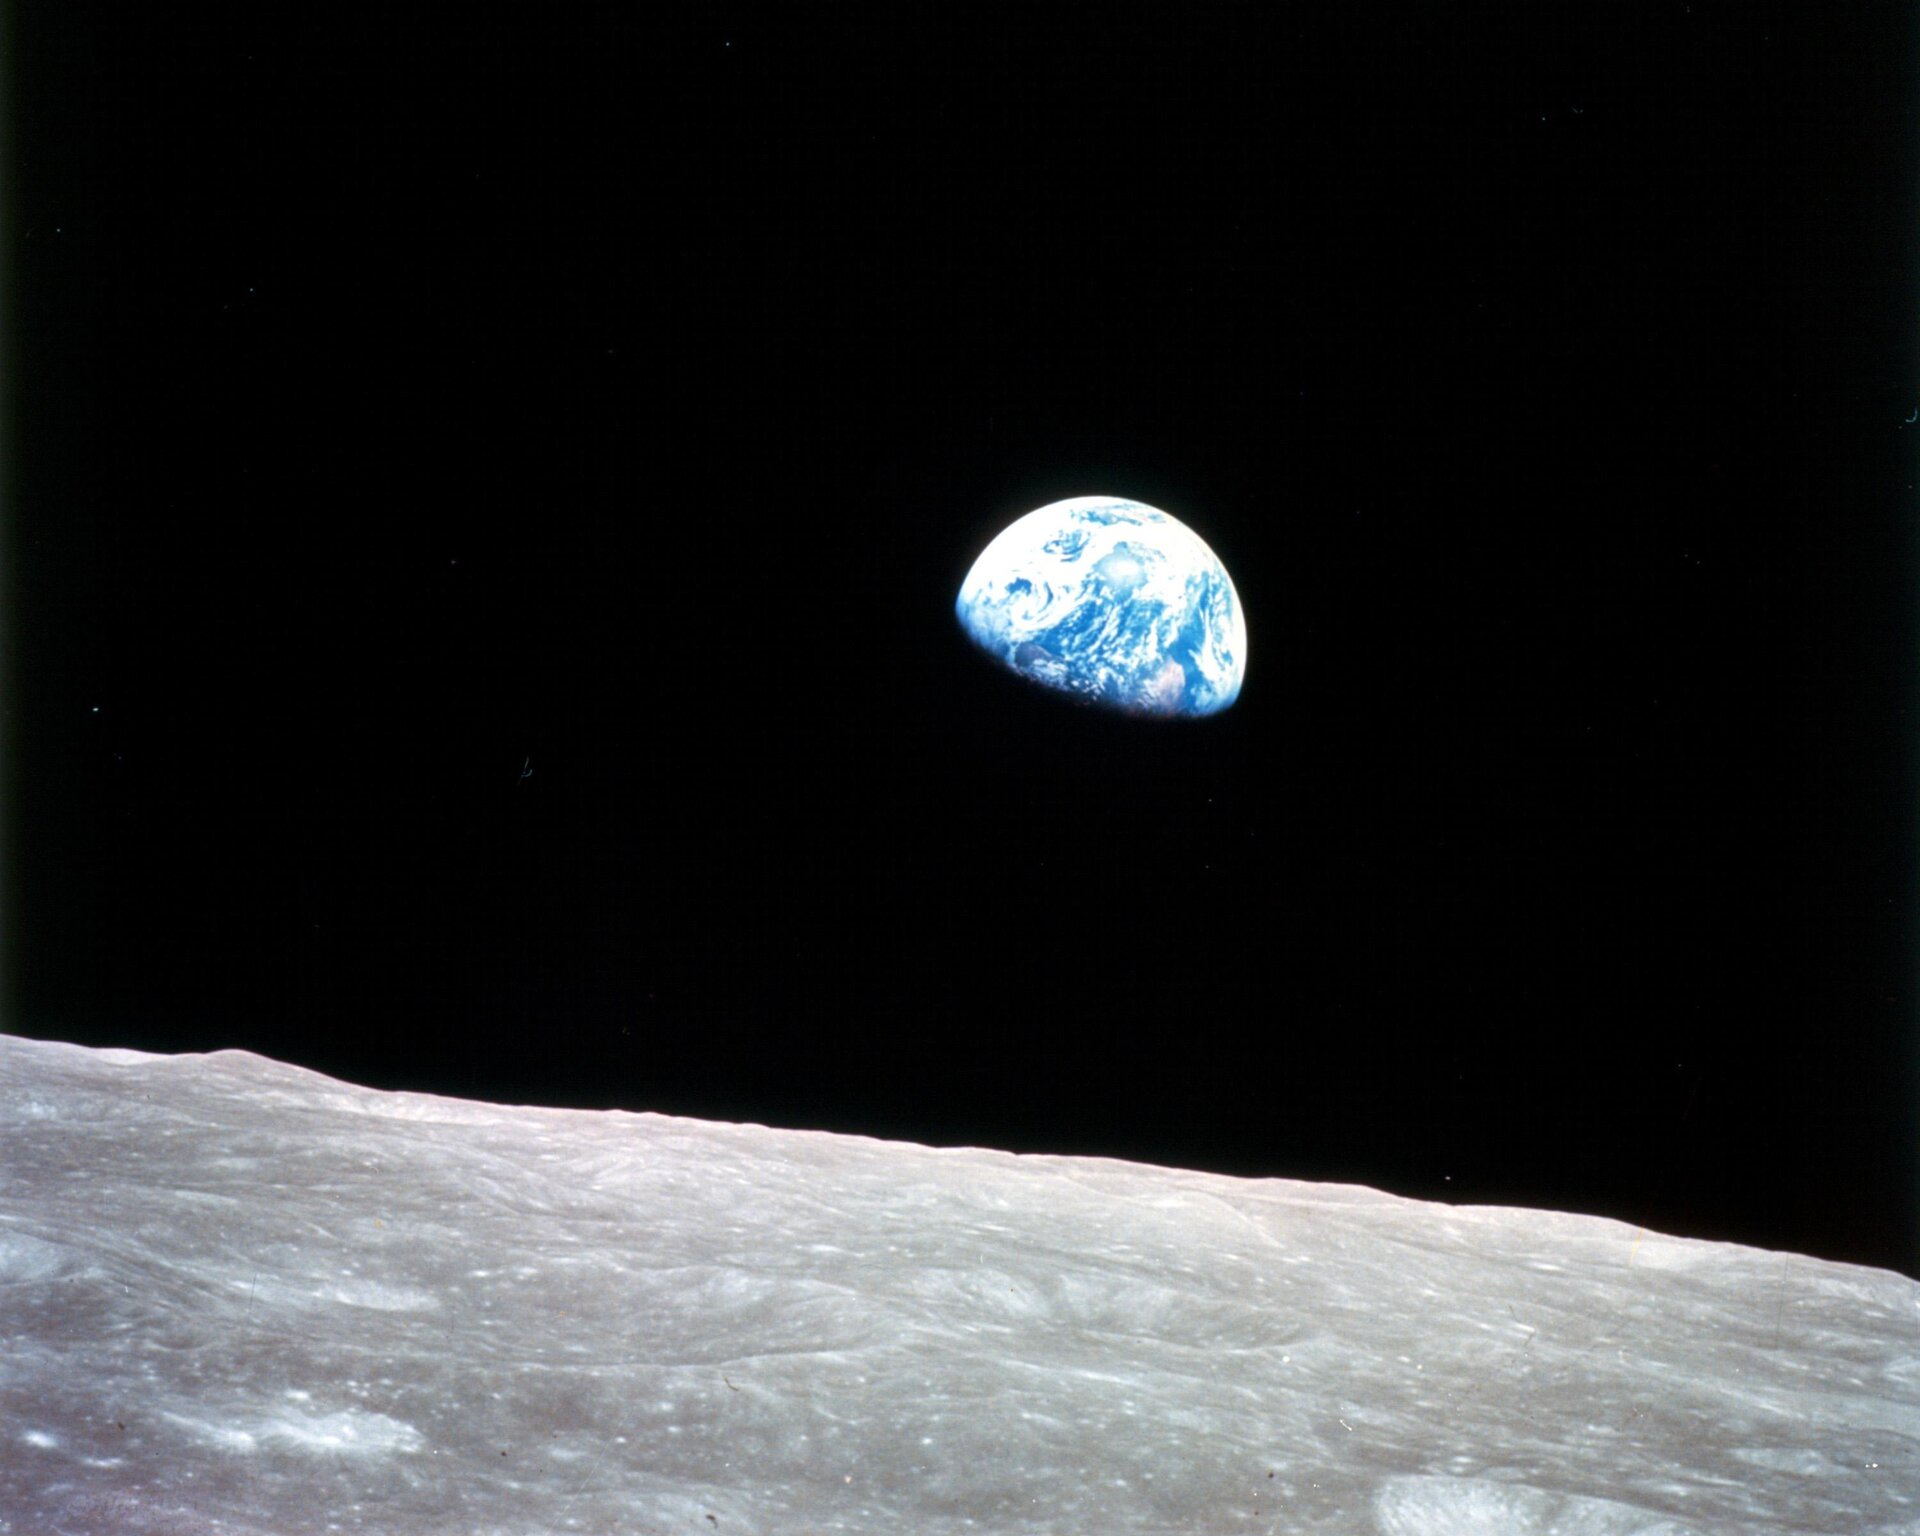 Imagem ‘Earthrise’ capturada pelo astronauta da NASA William Anders